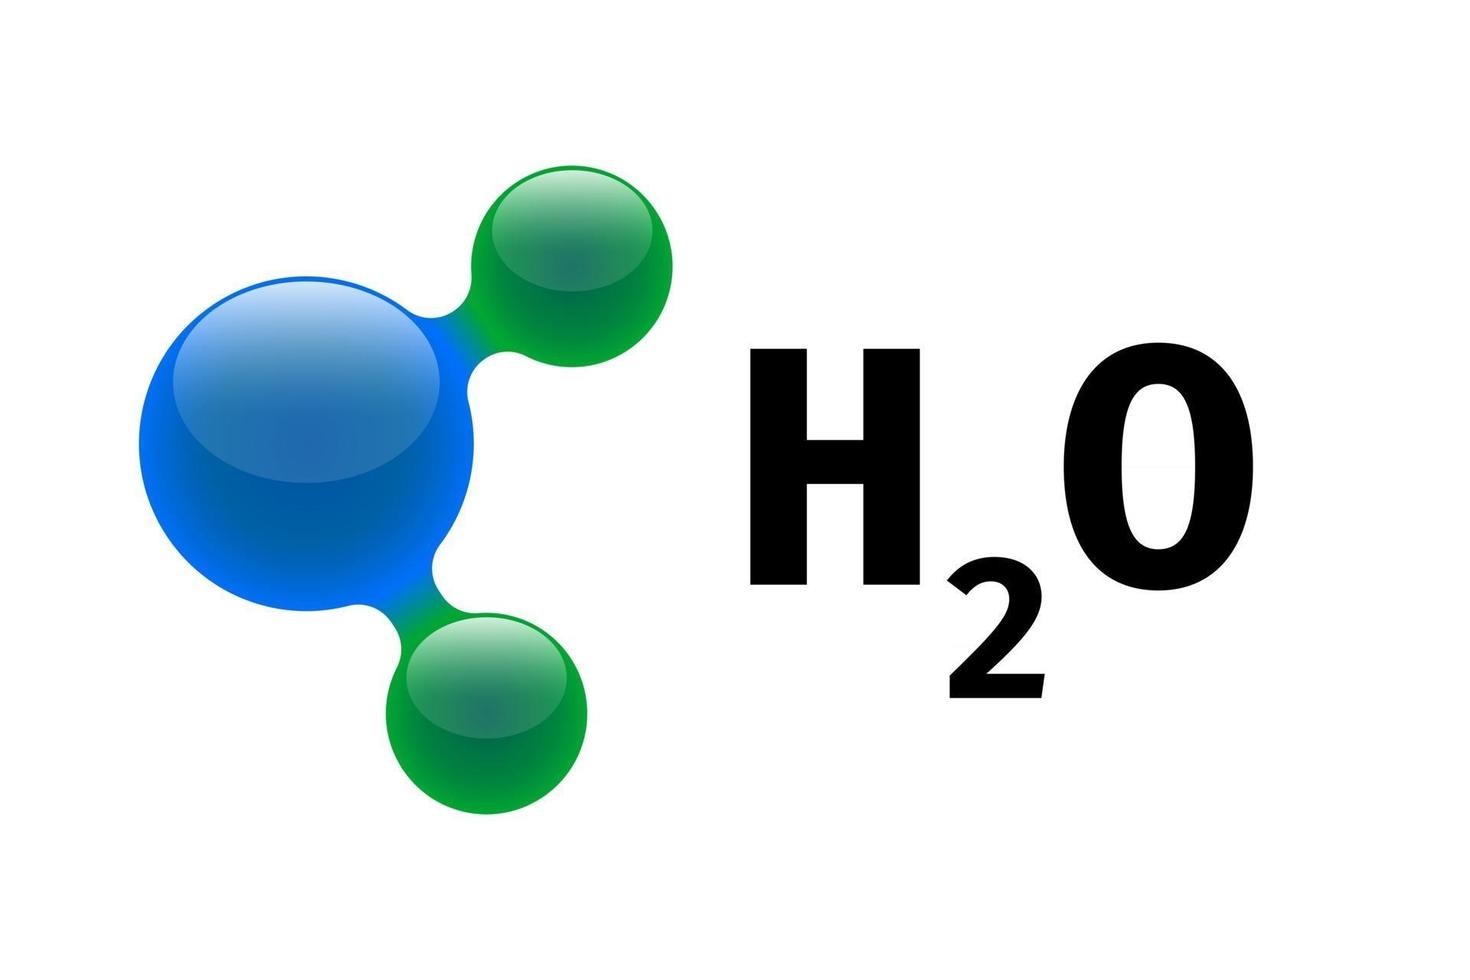 modelo de química de la molécula de agua h2o elementos científicos.  partículas integradas de hidrógeno y oxígeno compuesto inorgánico natural.  Ilustración de vector de estructura molecular 3d aislado sobre fondo blanco  2839176